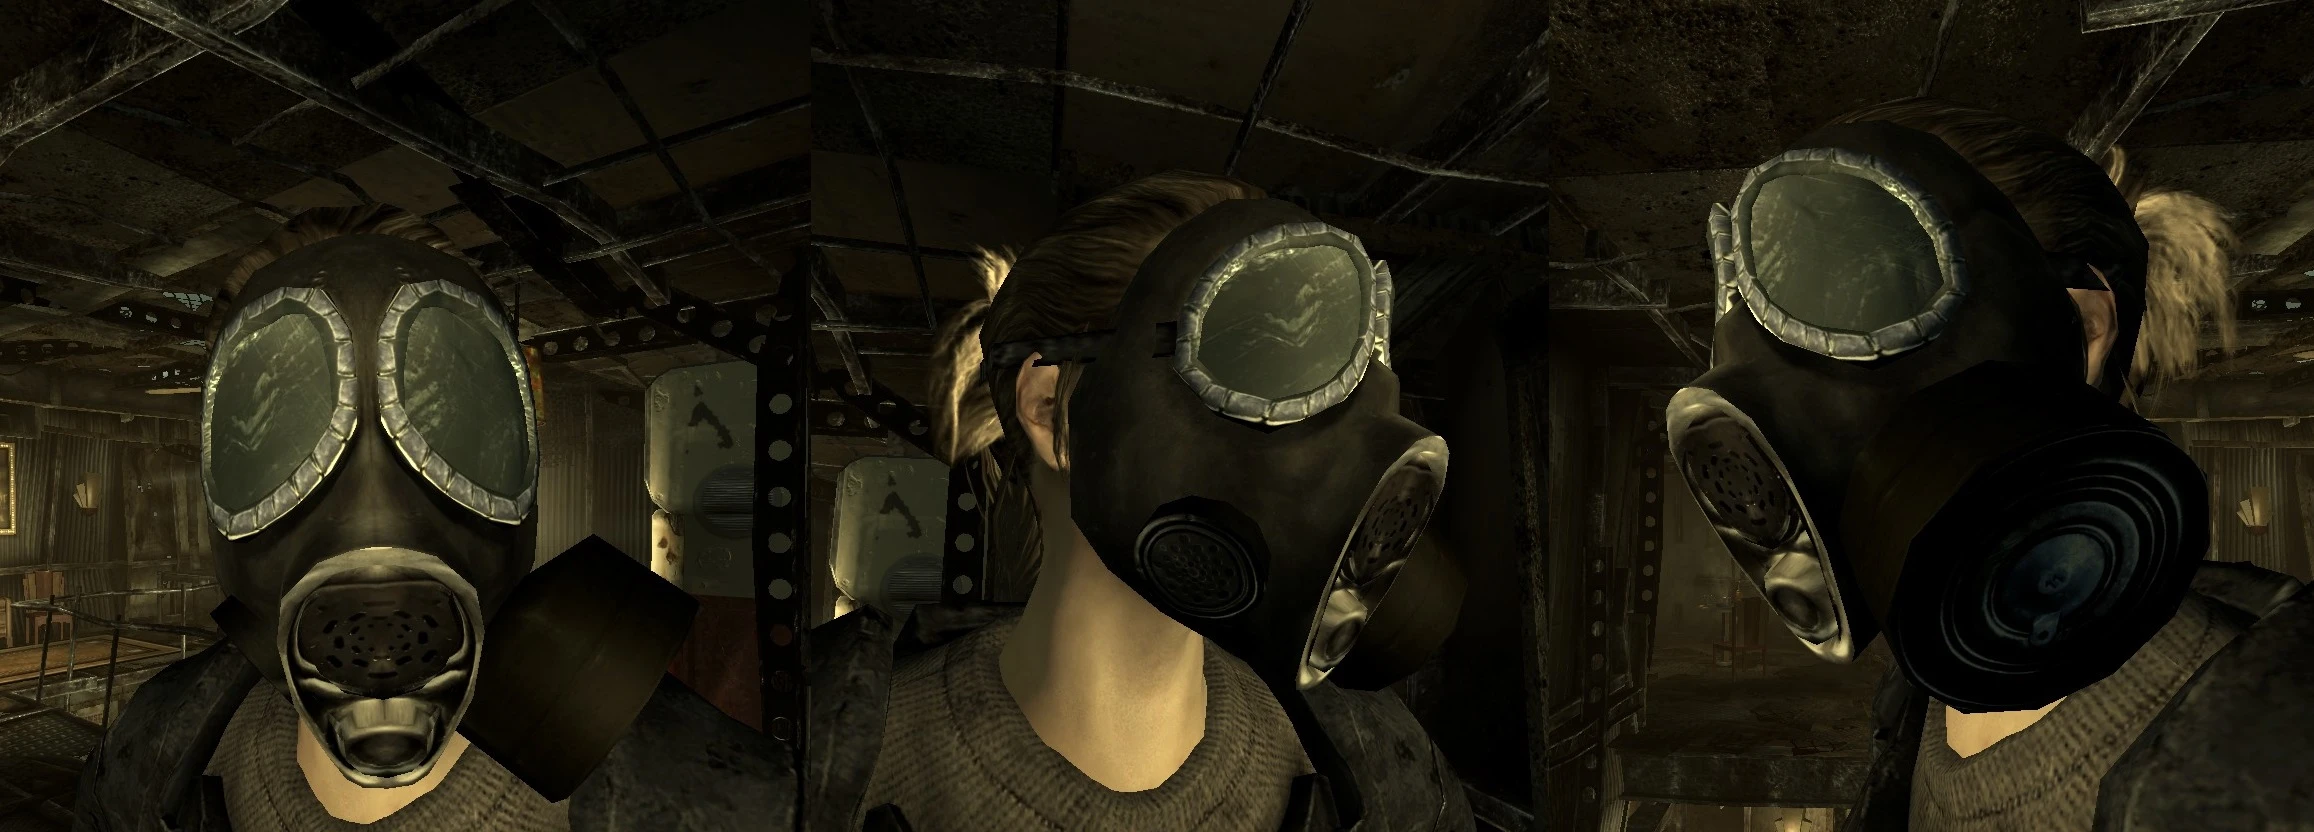 Fallout 4 metro mask фото 92